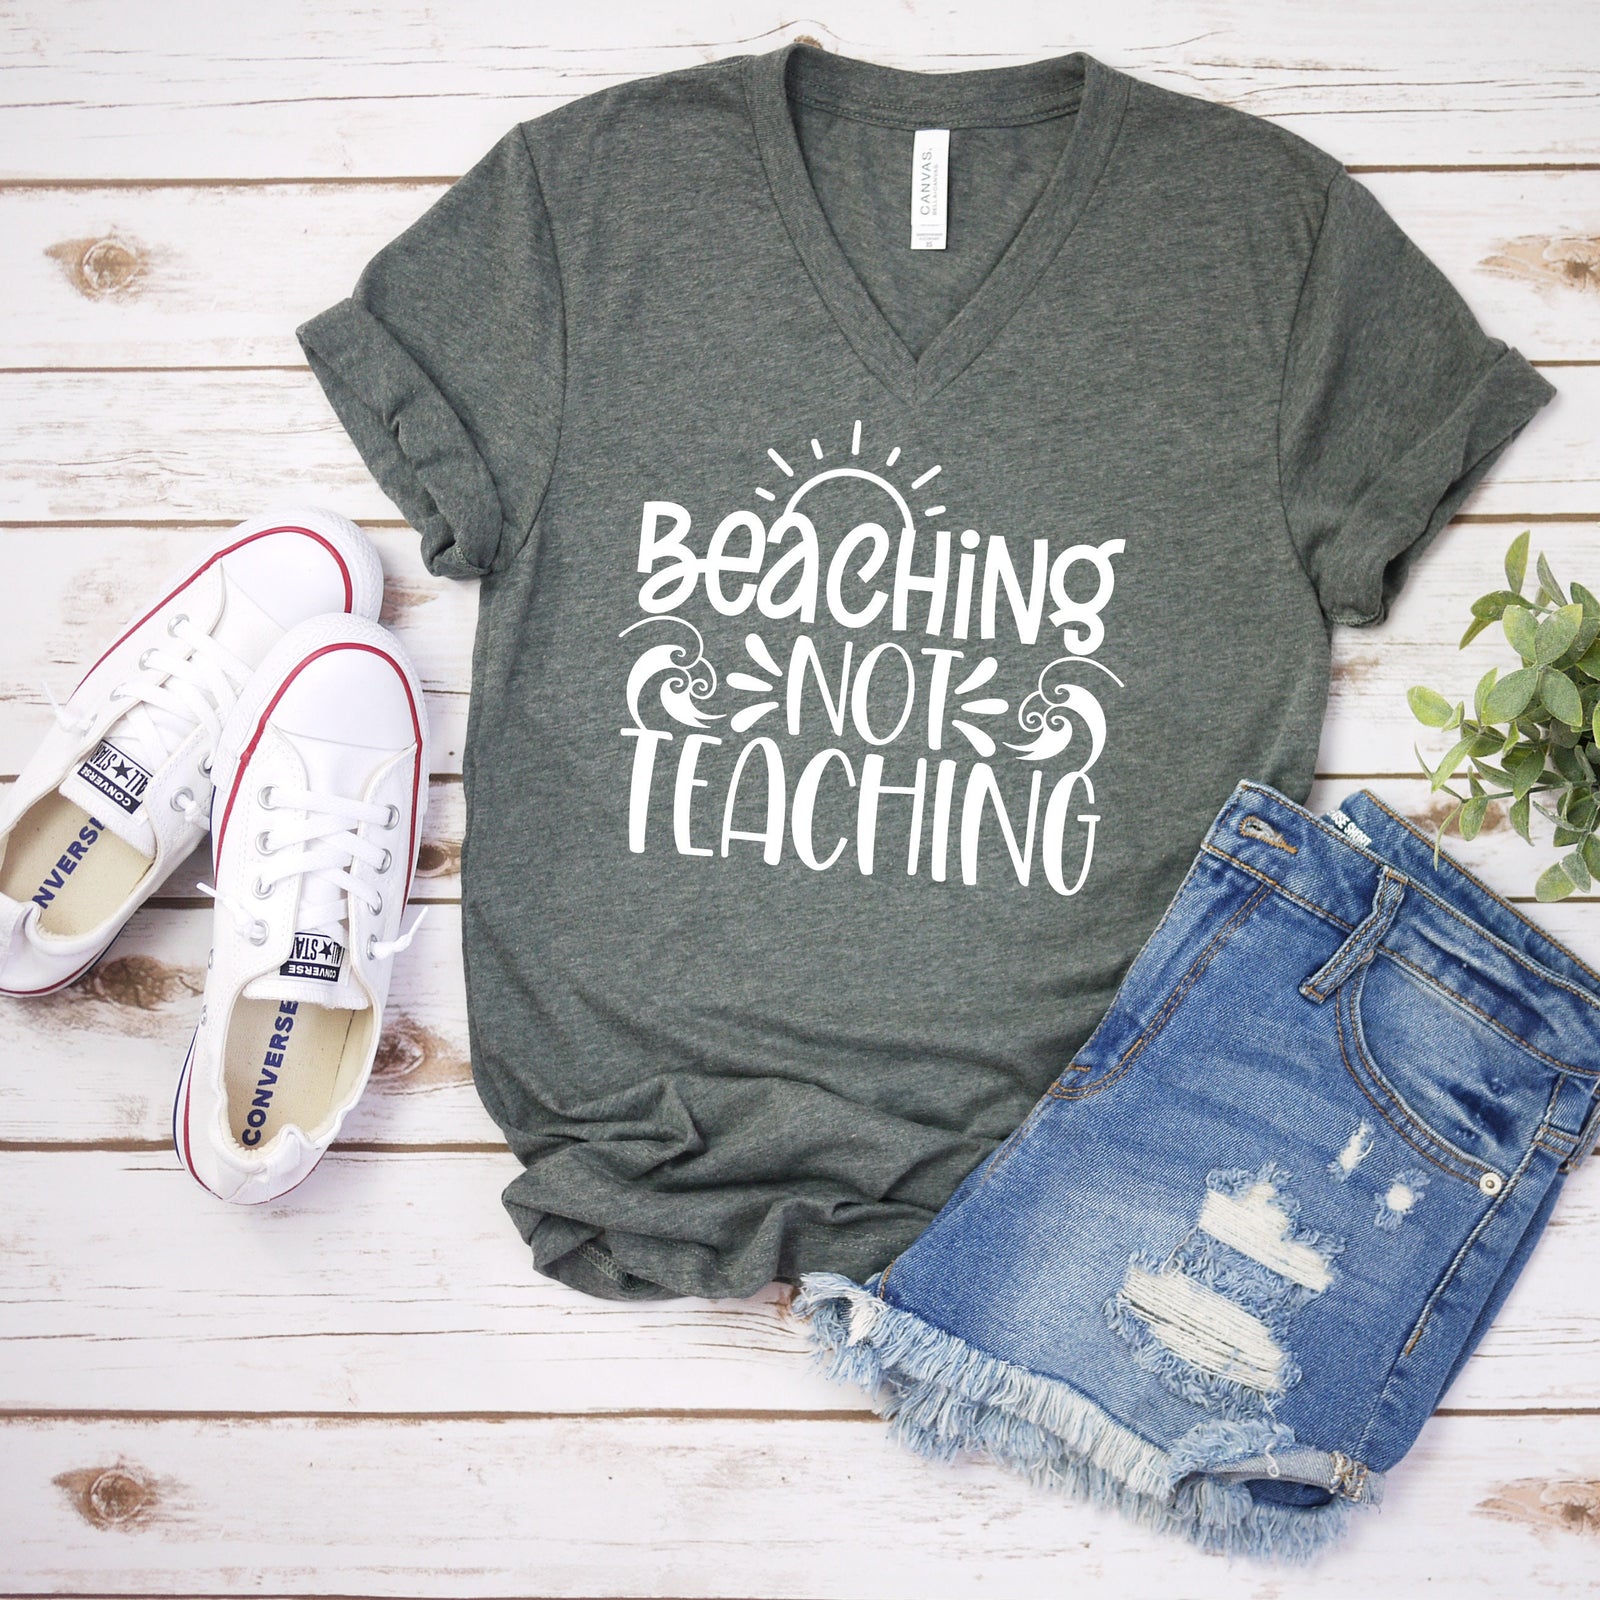 Beaching Not Teaching T Shirt - Teacher Shirts - Favorite Teacher T Shirt